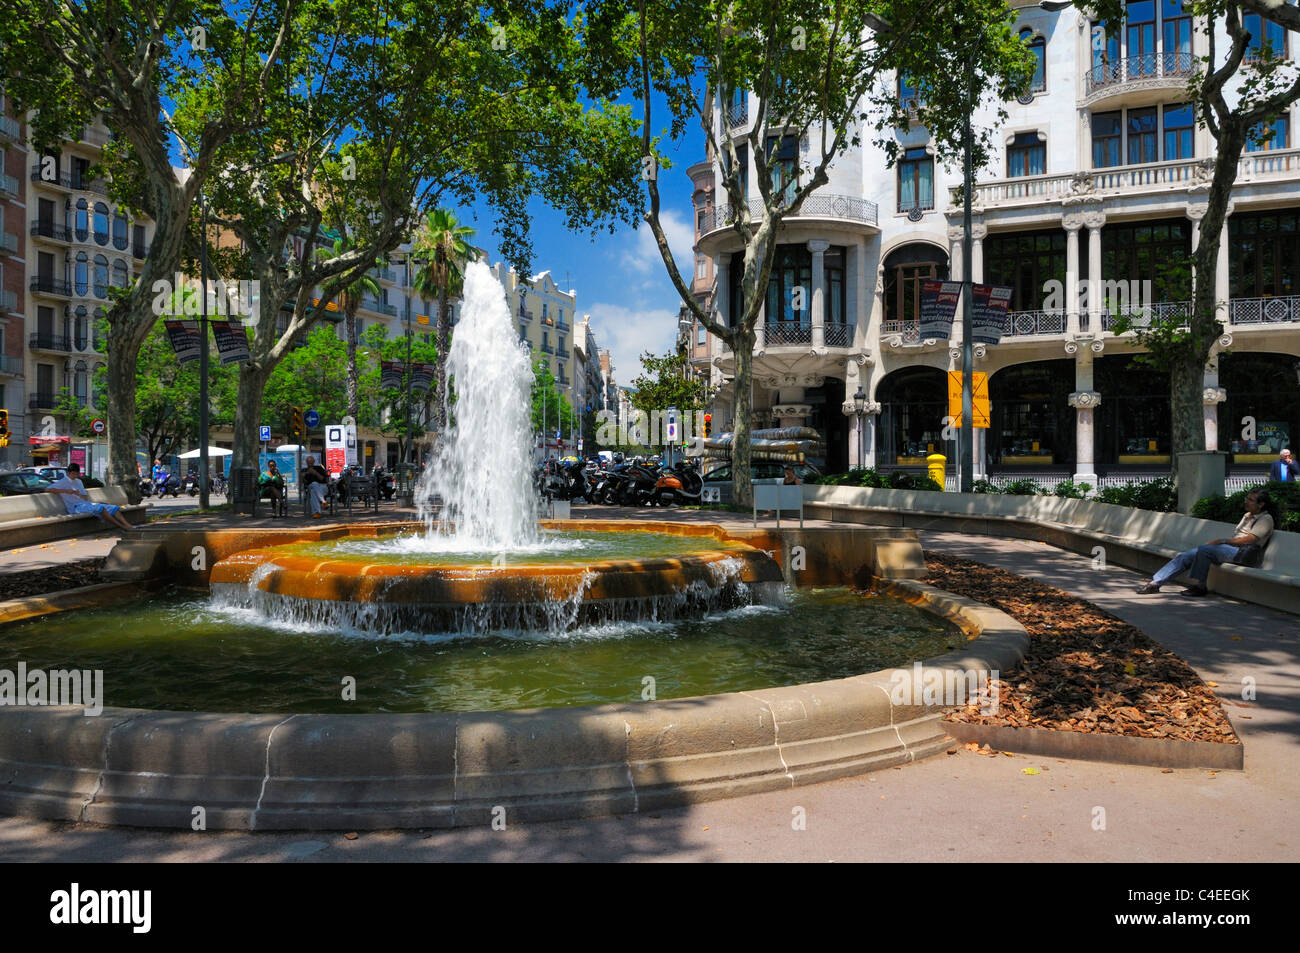 La fontaine en face de l'hôtel cas Fuster sur le Passeig de Gràcia, Barcelone, Espagne. Banque D'Images